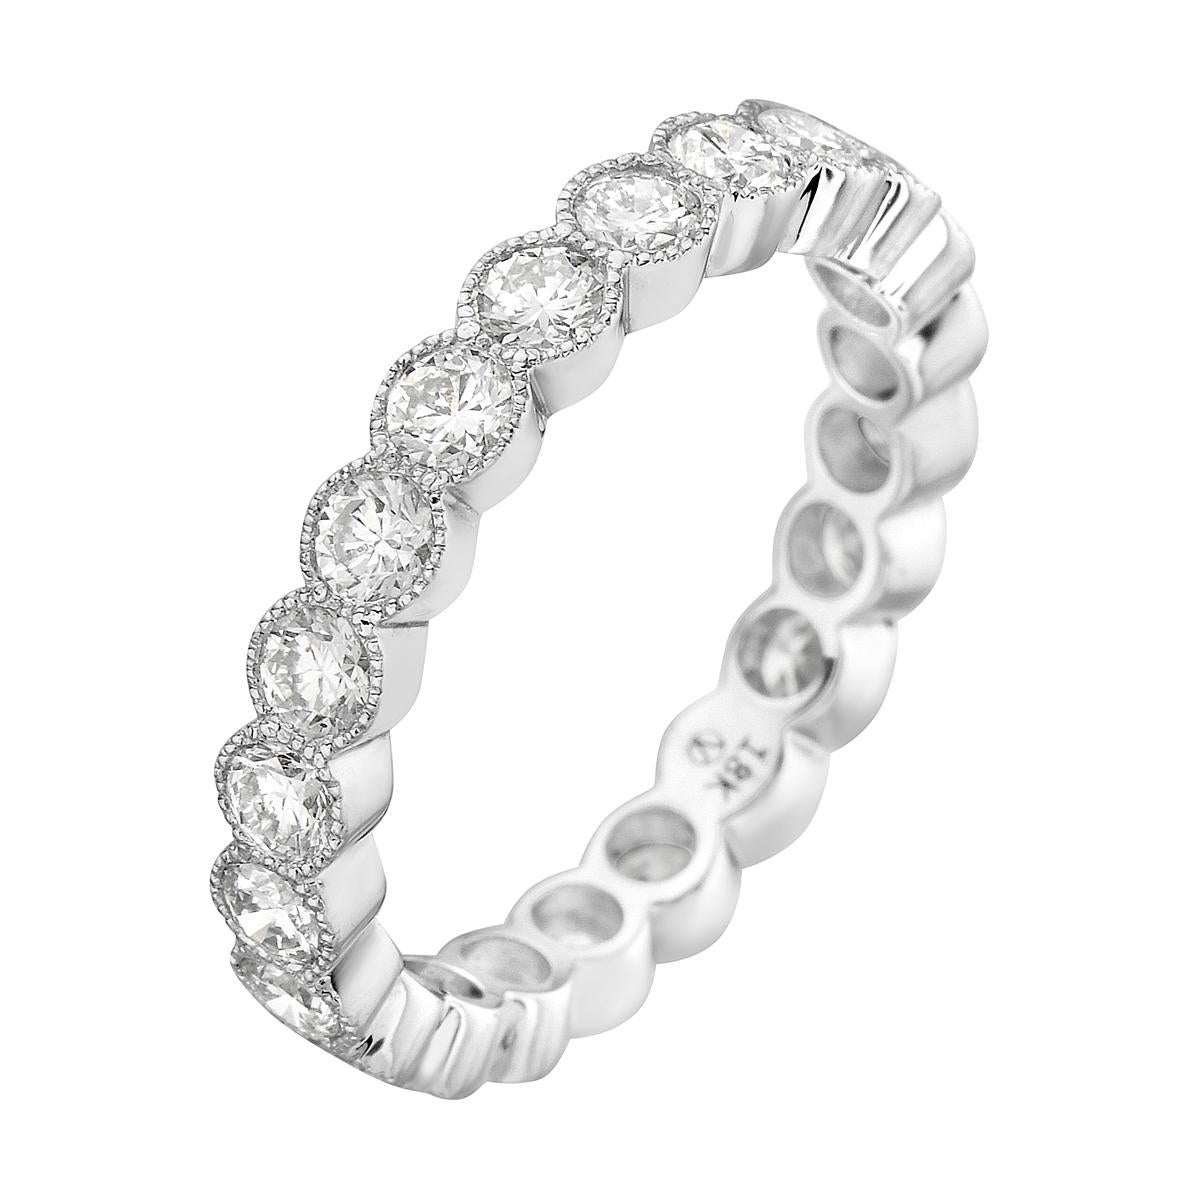 Avec cet exquis bracelet en diamants, le style et le glamour sont à l'honneur. Ce bracelet en diamants de 18 carats est fabriqué à partir de 2,2 grammes d'or. Cette bague est ornée de diamants de couleur VS2, G, composés de 22 diamants totalisant